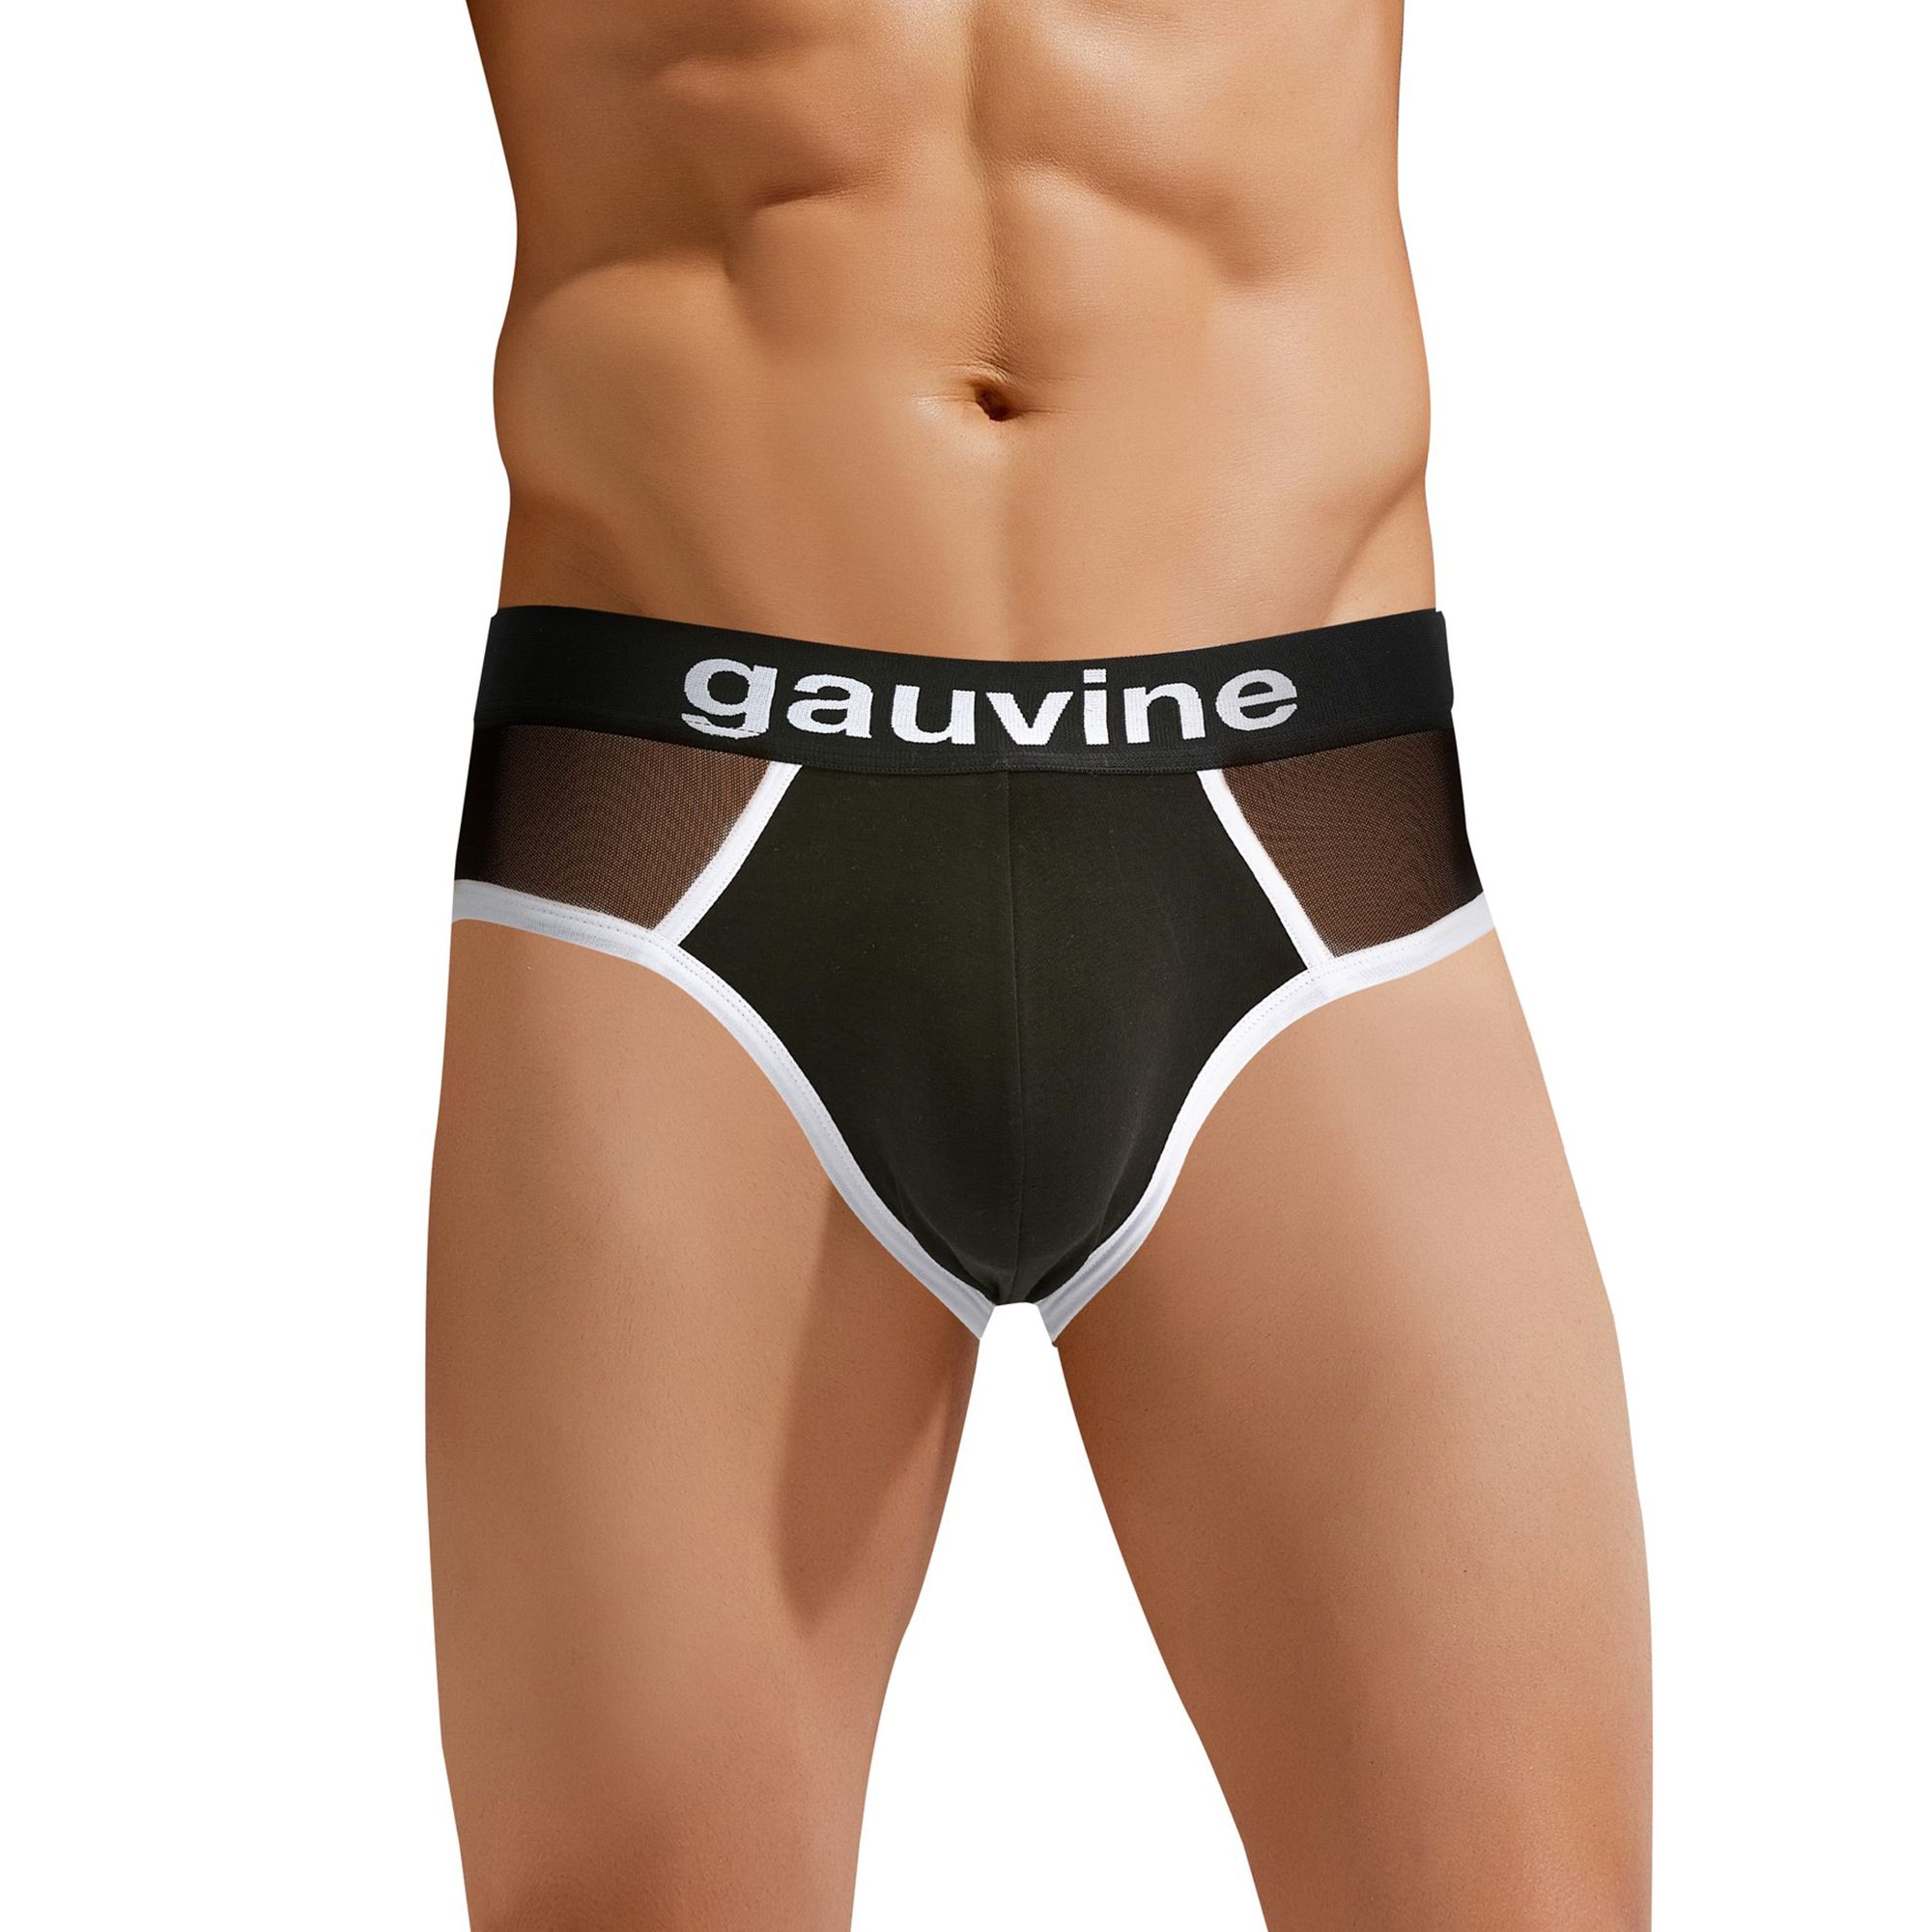 Сексуальные трусы-джоки с контрастной отделкой Gauvine. Приятный к телу материал, удобная посадка, сексуальный дизайн.